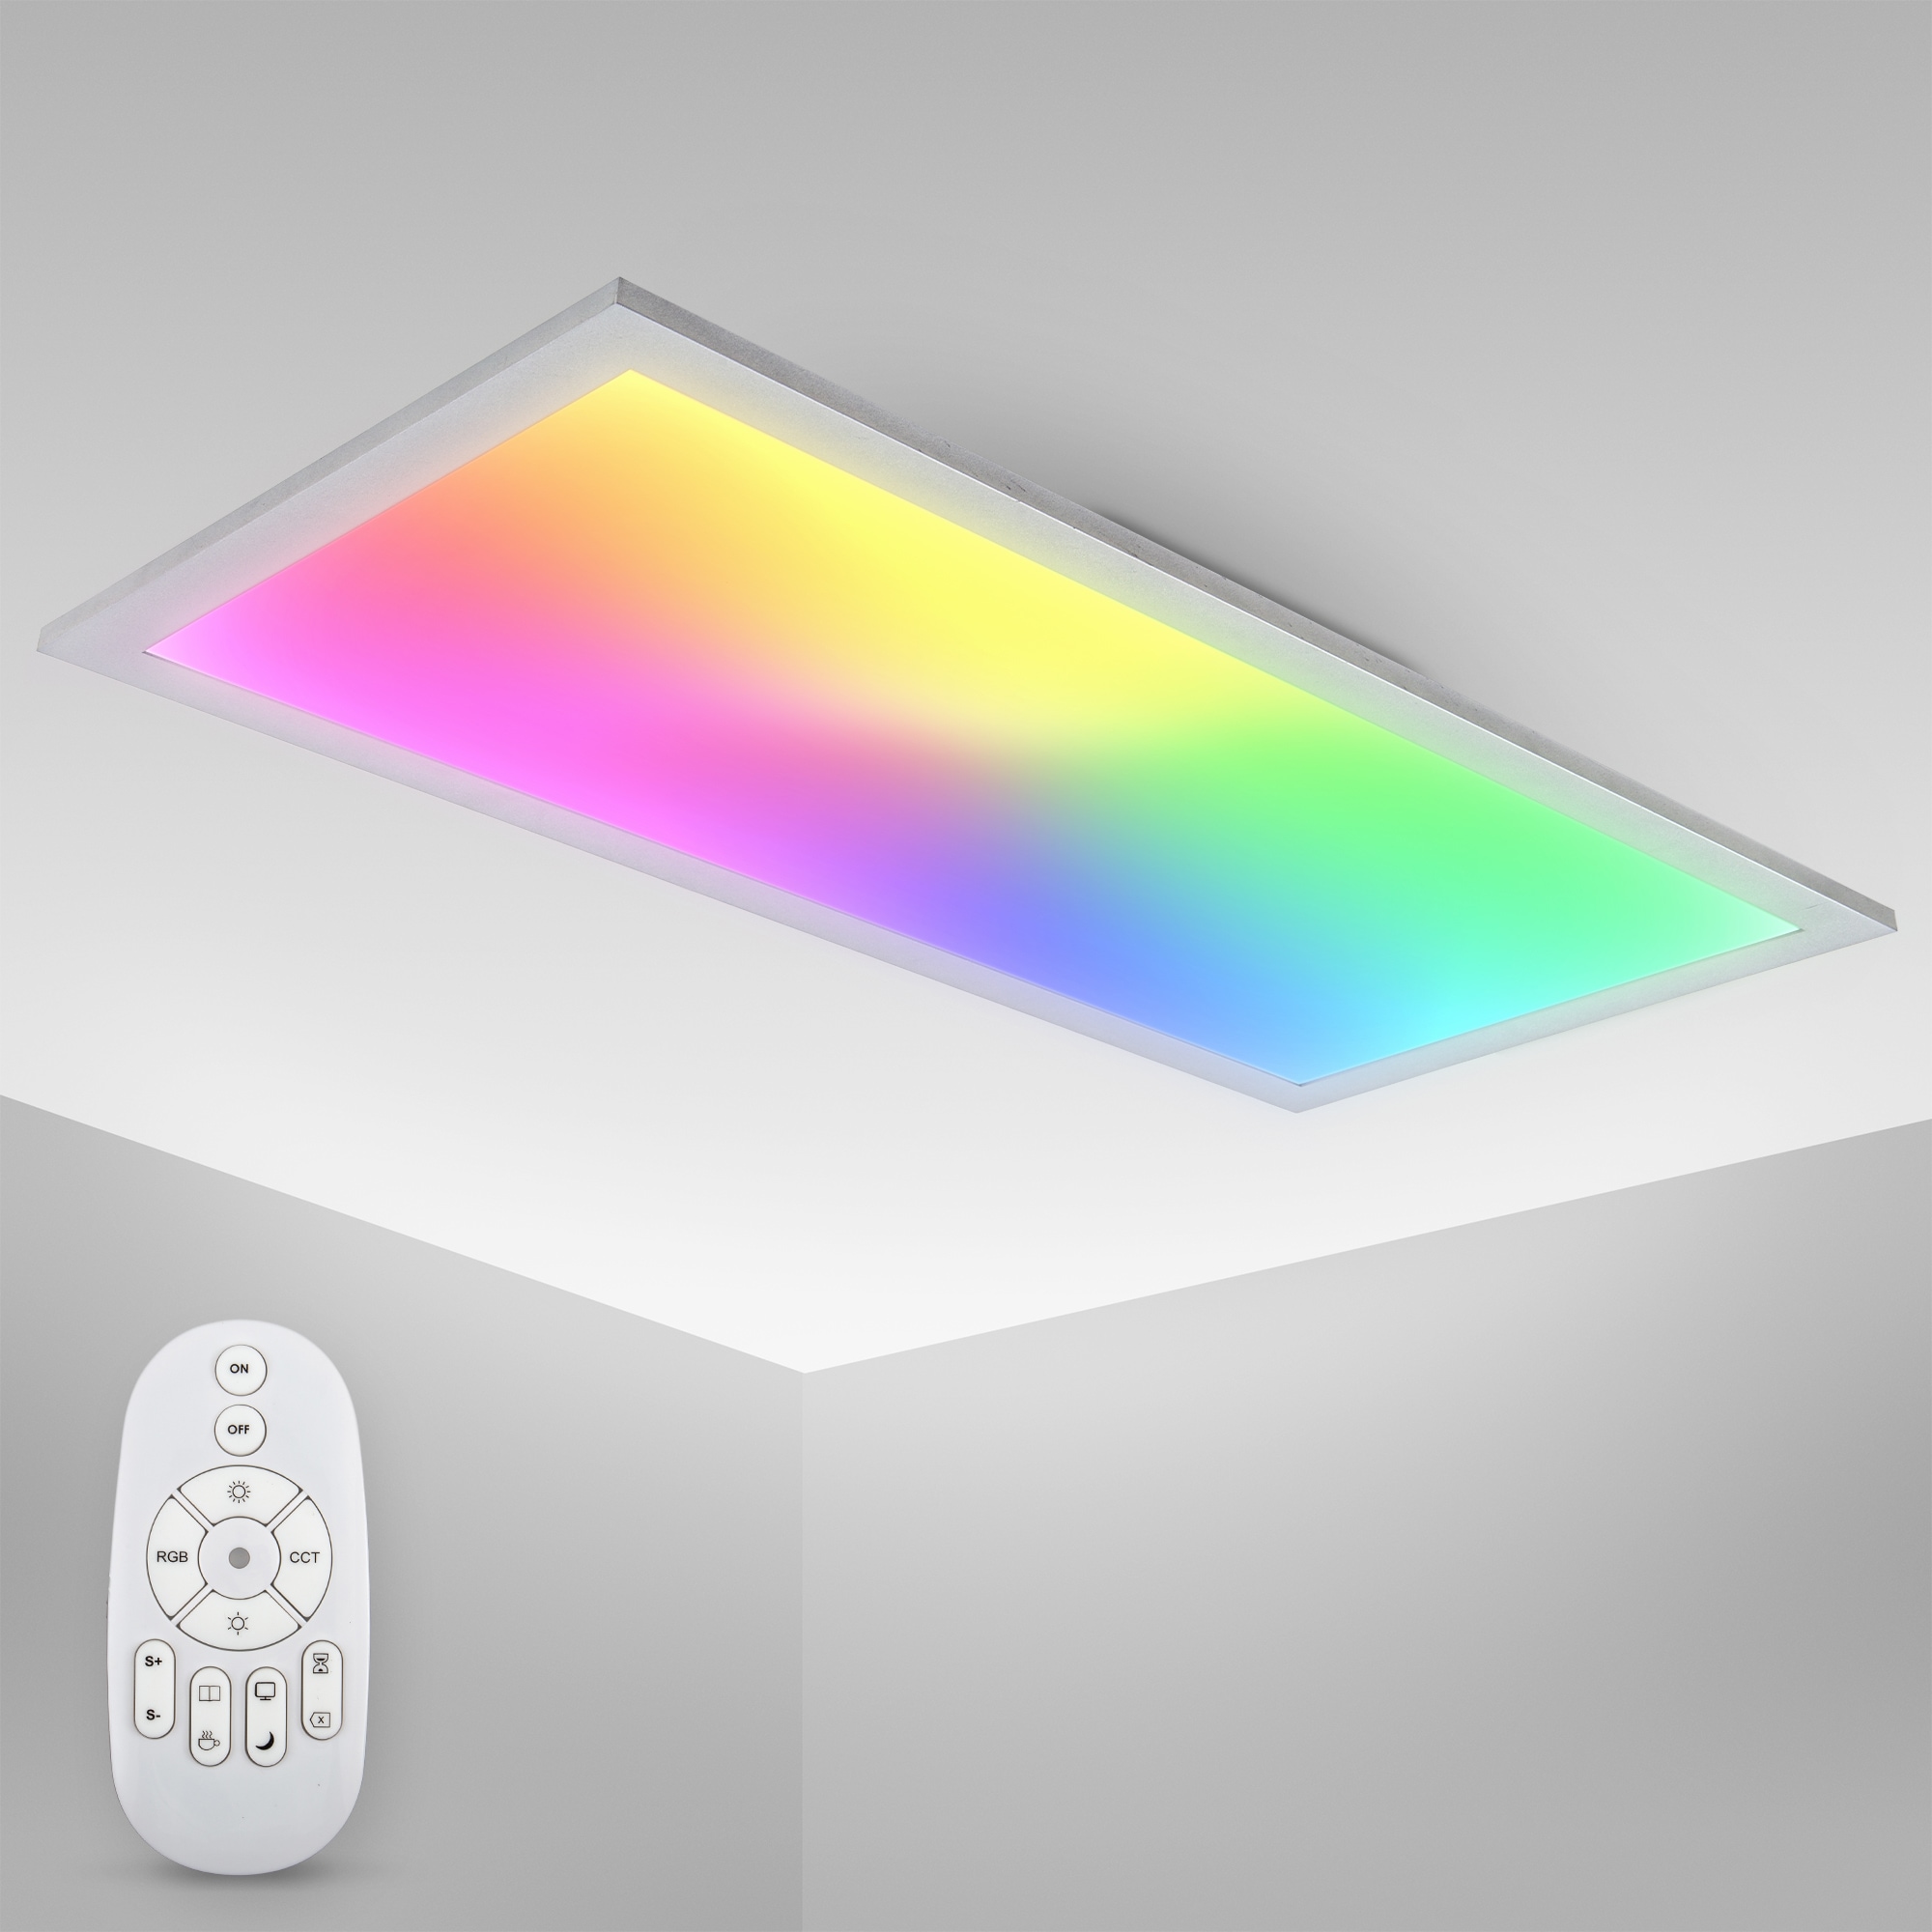 Licht LED Panel, ultraflach, dimmbar, mit 15 Watt, 1300 Lumen Leuchtmittel,  CCT Farbtemperatursteuerung 3.000K-6.500K, inkl. Fernbedienung, 59,5 x 29,5  cm kaufen online bei OTTO